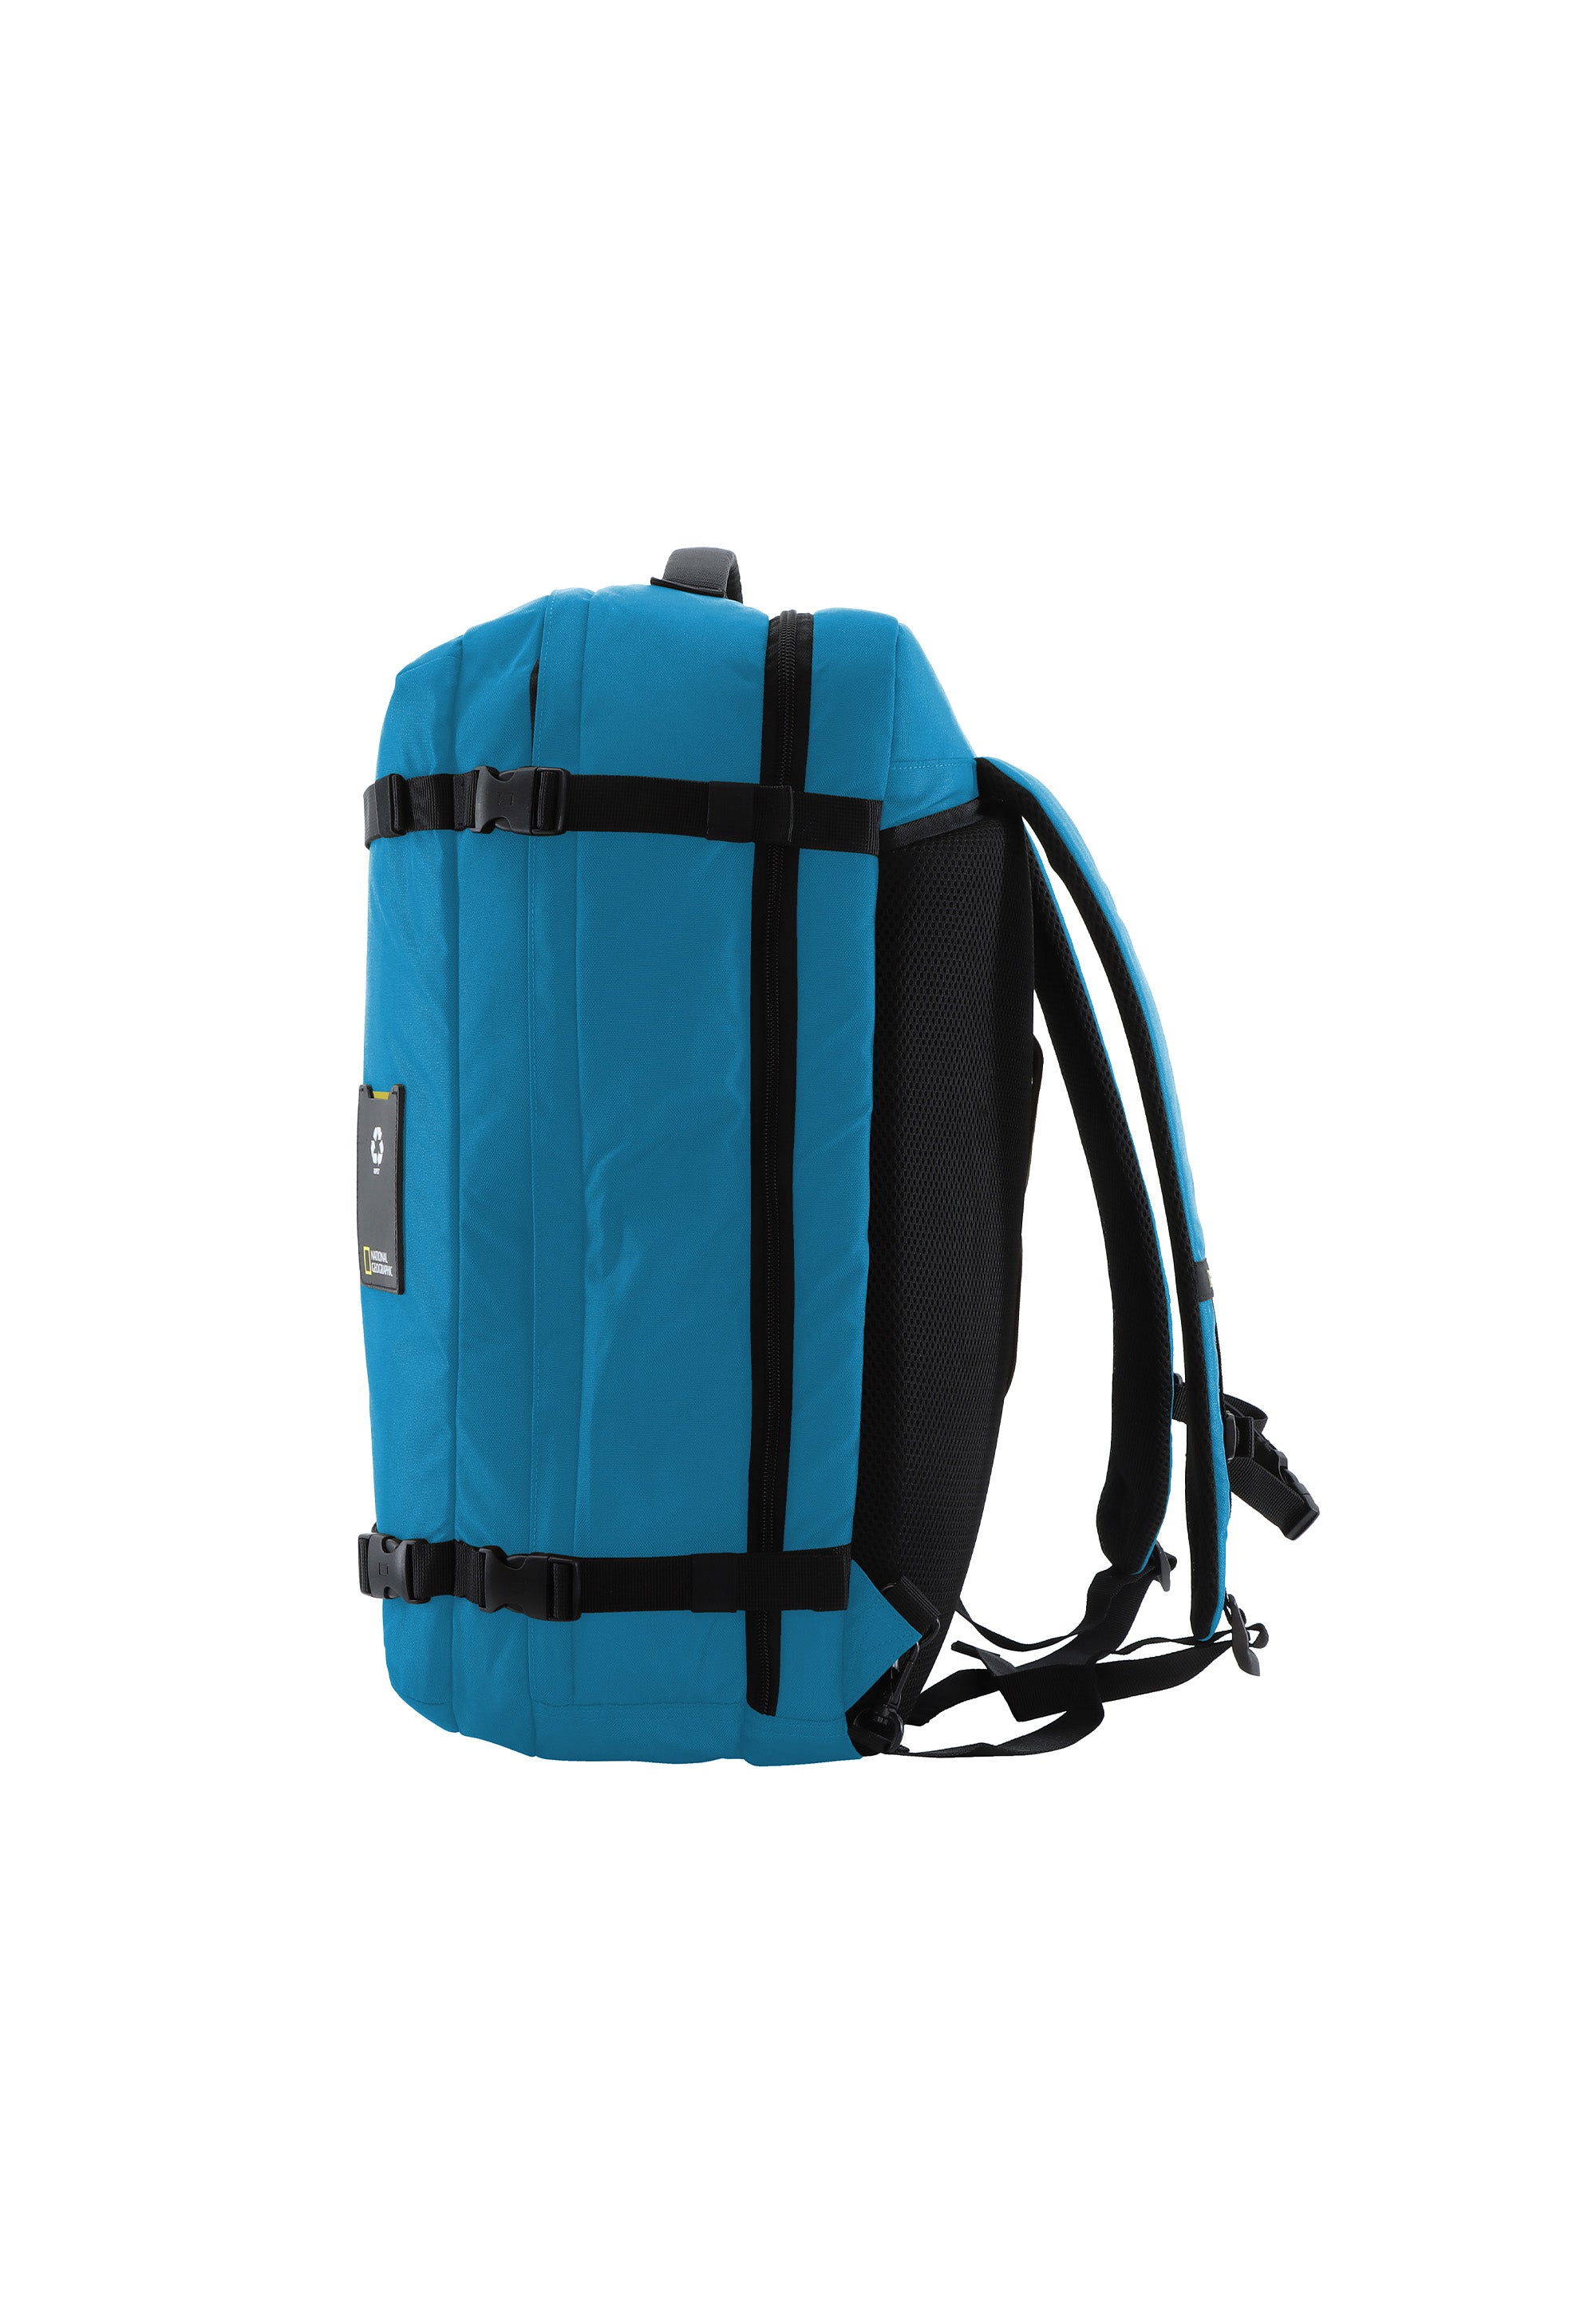 Laptoptasche Rucksack Schultertasche der Nat Geo Serie Ocean in blau RPET N20908